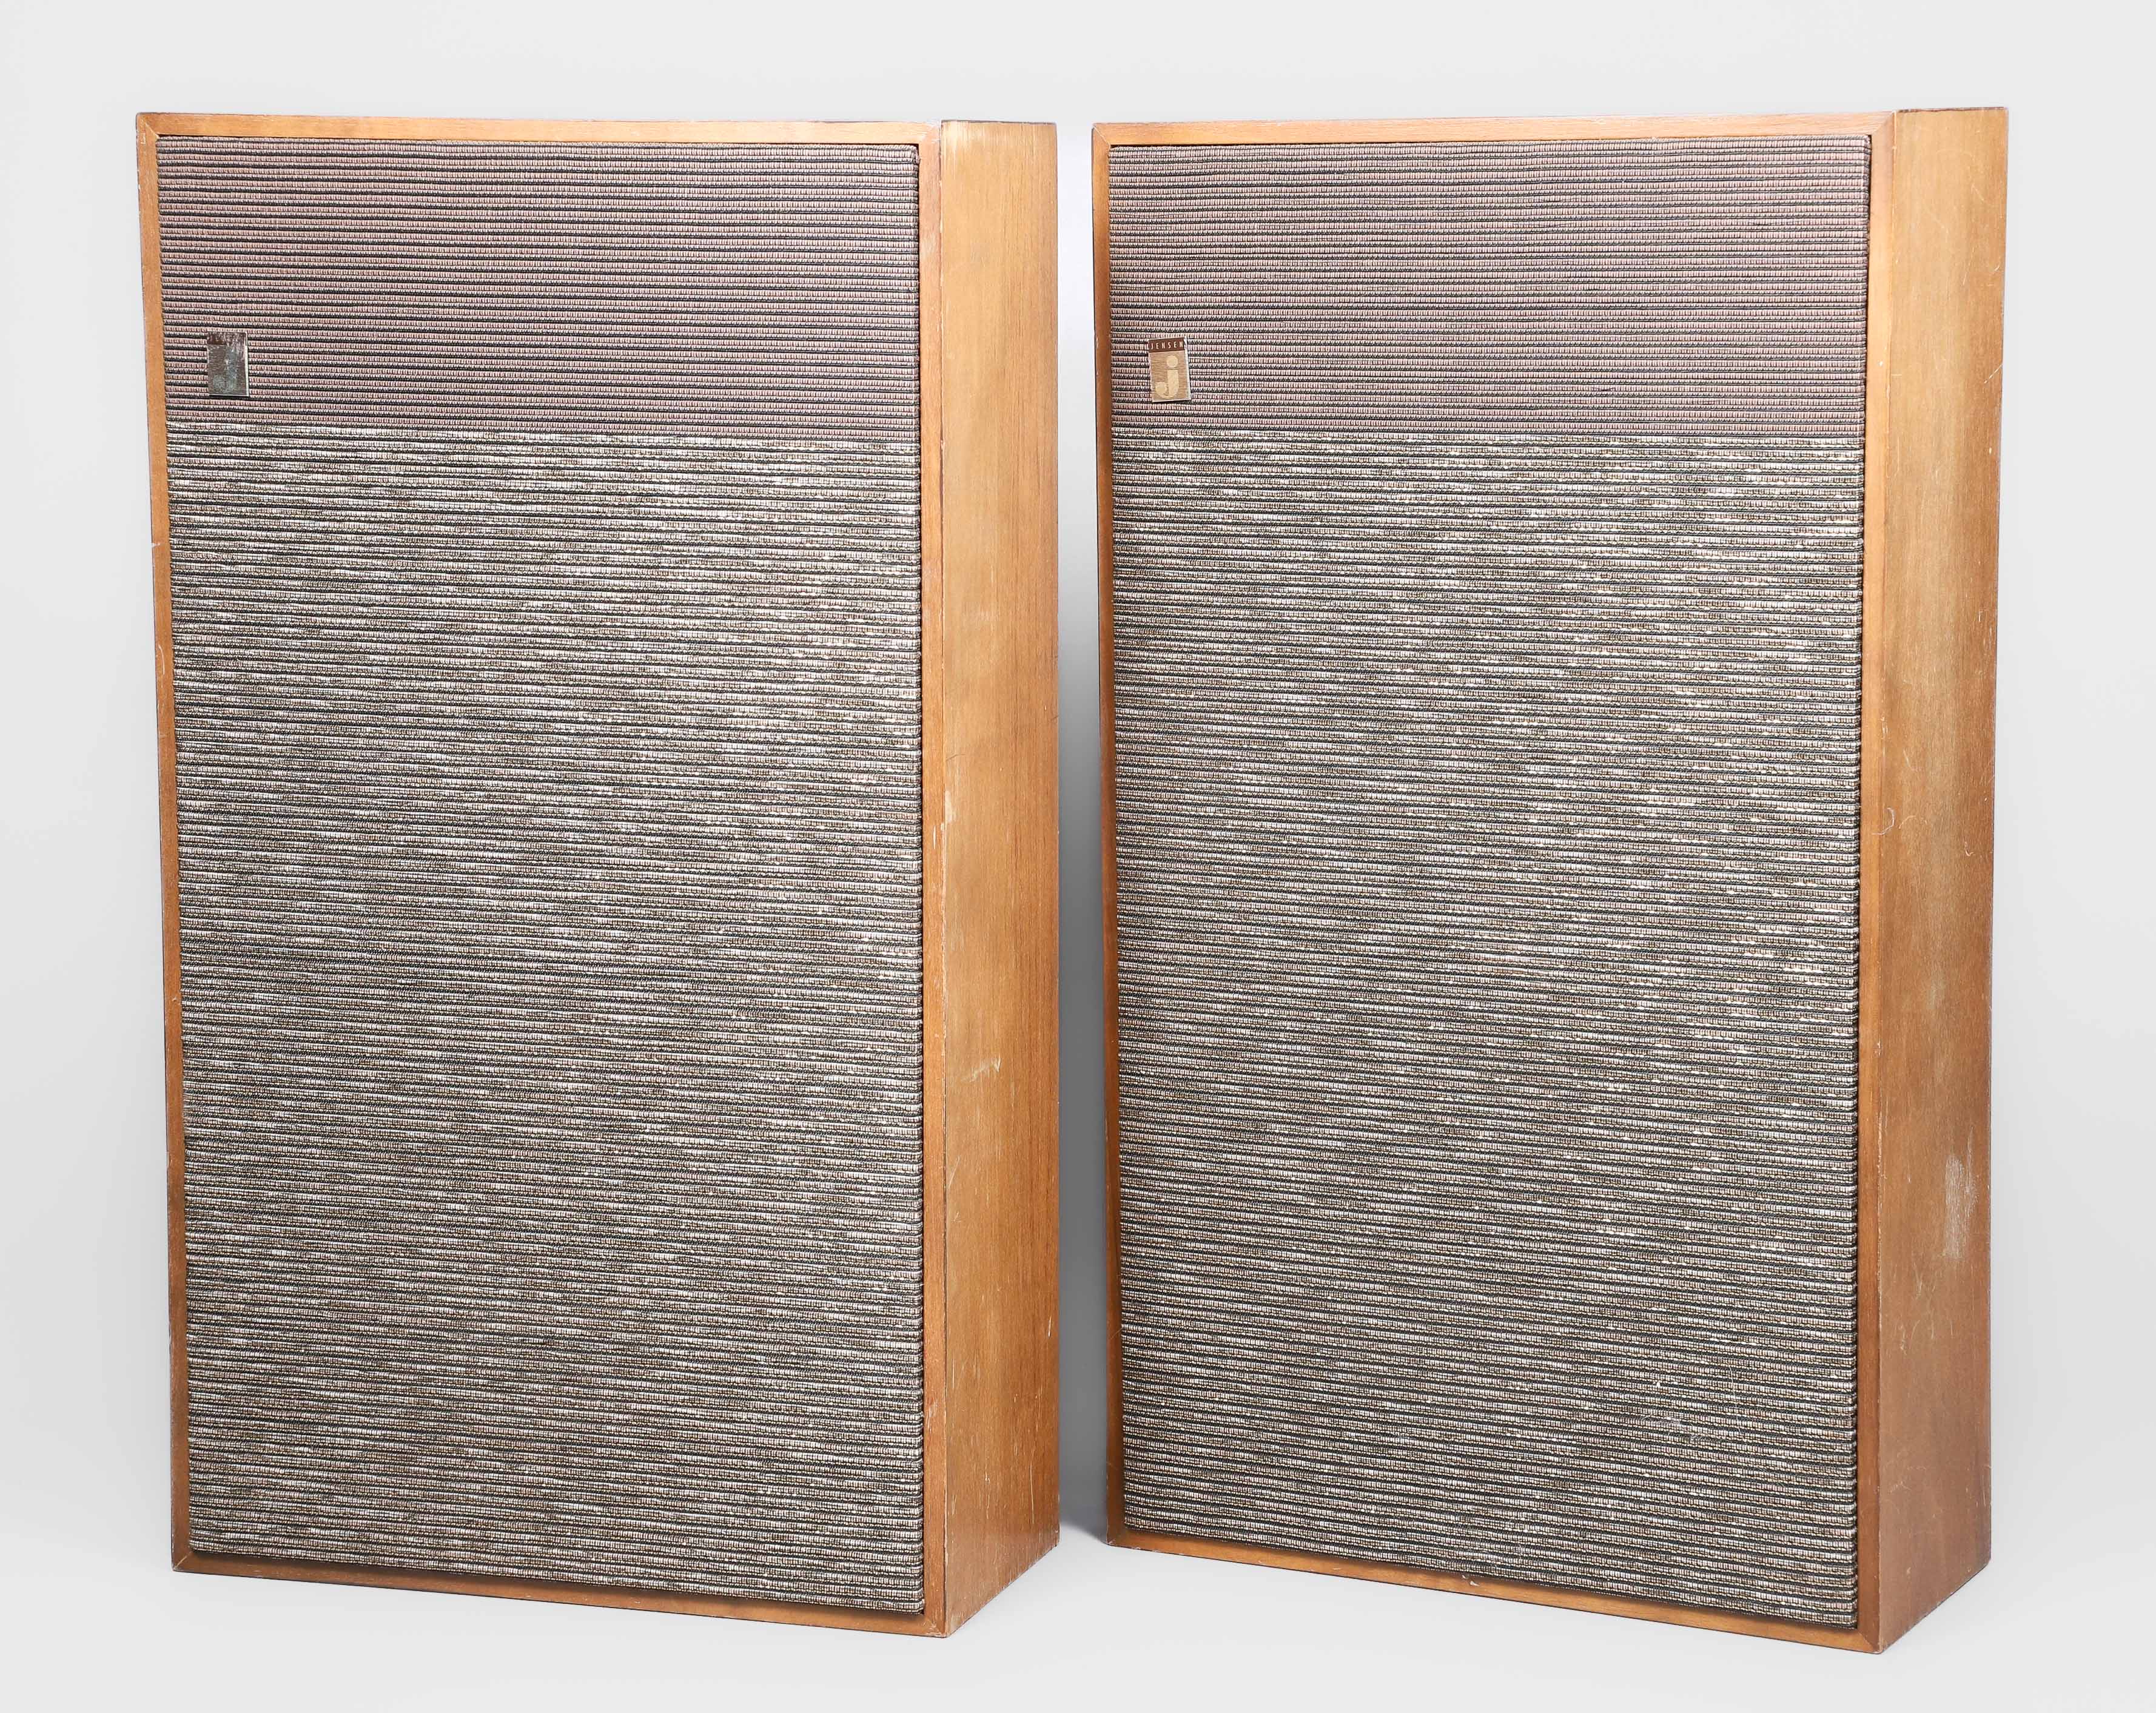 Pair of Jensen speakers, TR-9 Slim